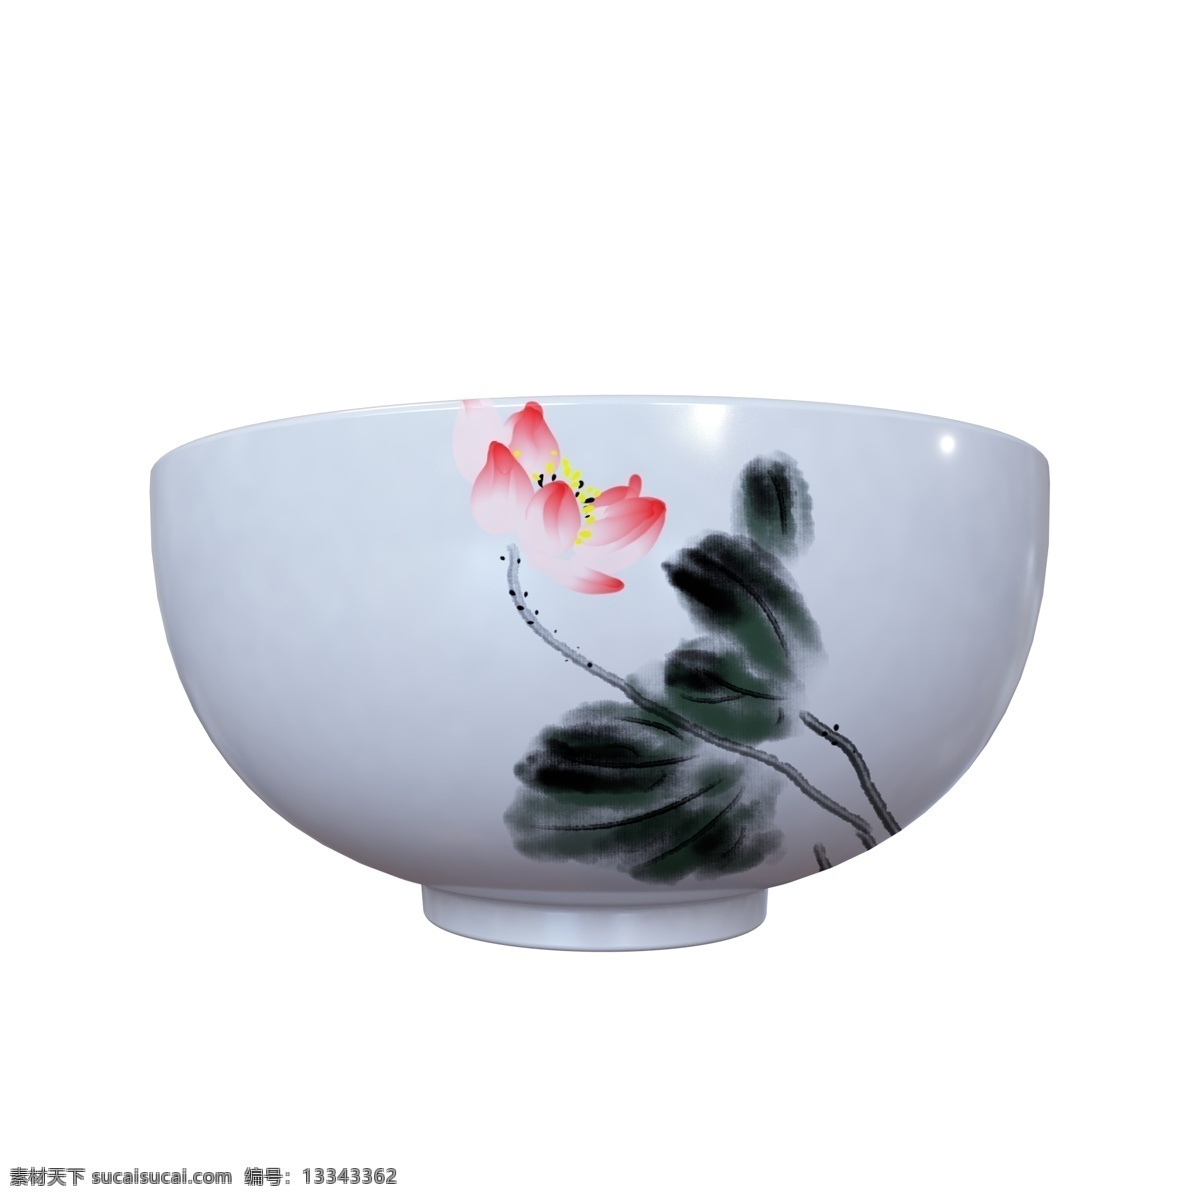 古风 印花 瓷碗 插画 碗 瓷器 印花瓷碗 立体印花瓷碗 立体碗 古风瓷器 中国风瓷器碗